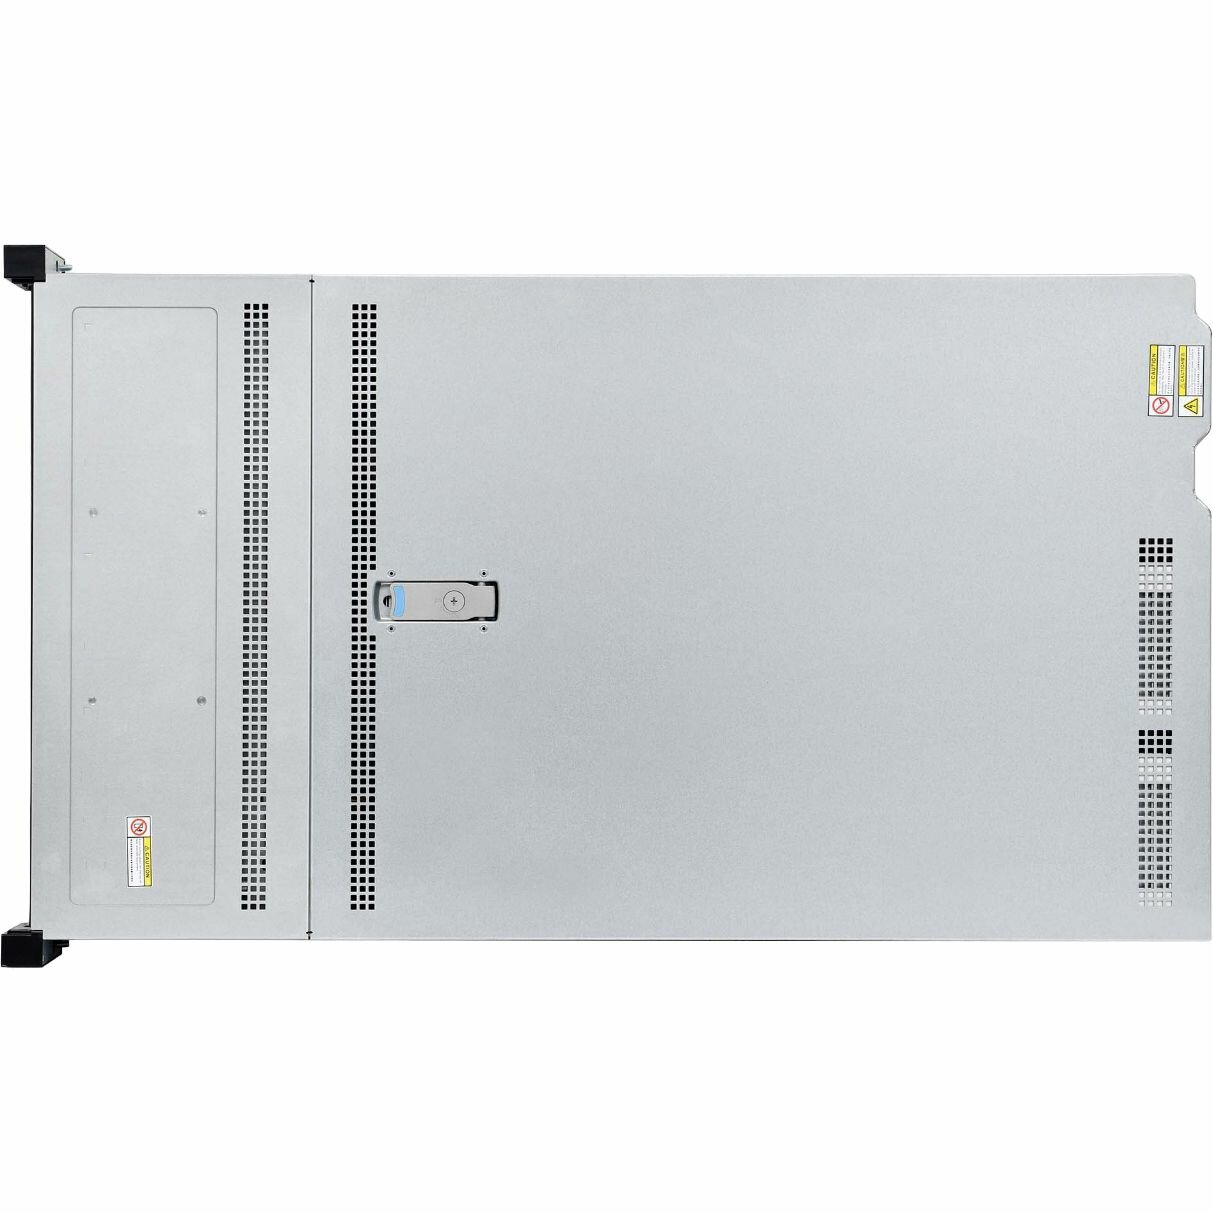 Серверная платформа HIPER Server R3 - Advanced (R3-T223208-13) - 2U/C621A/2x LGA4189 (Socket-P4)/Xeon SP поколения 3/270Вт TDP/32x DIMM/8x 3